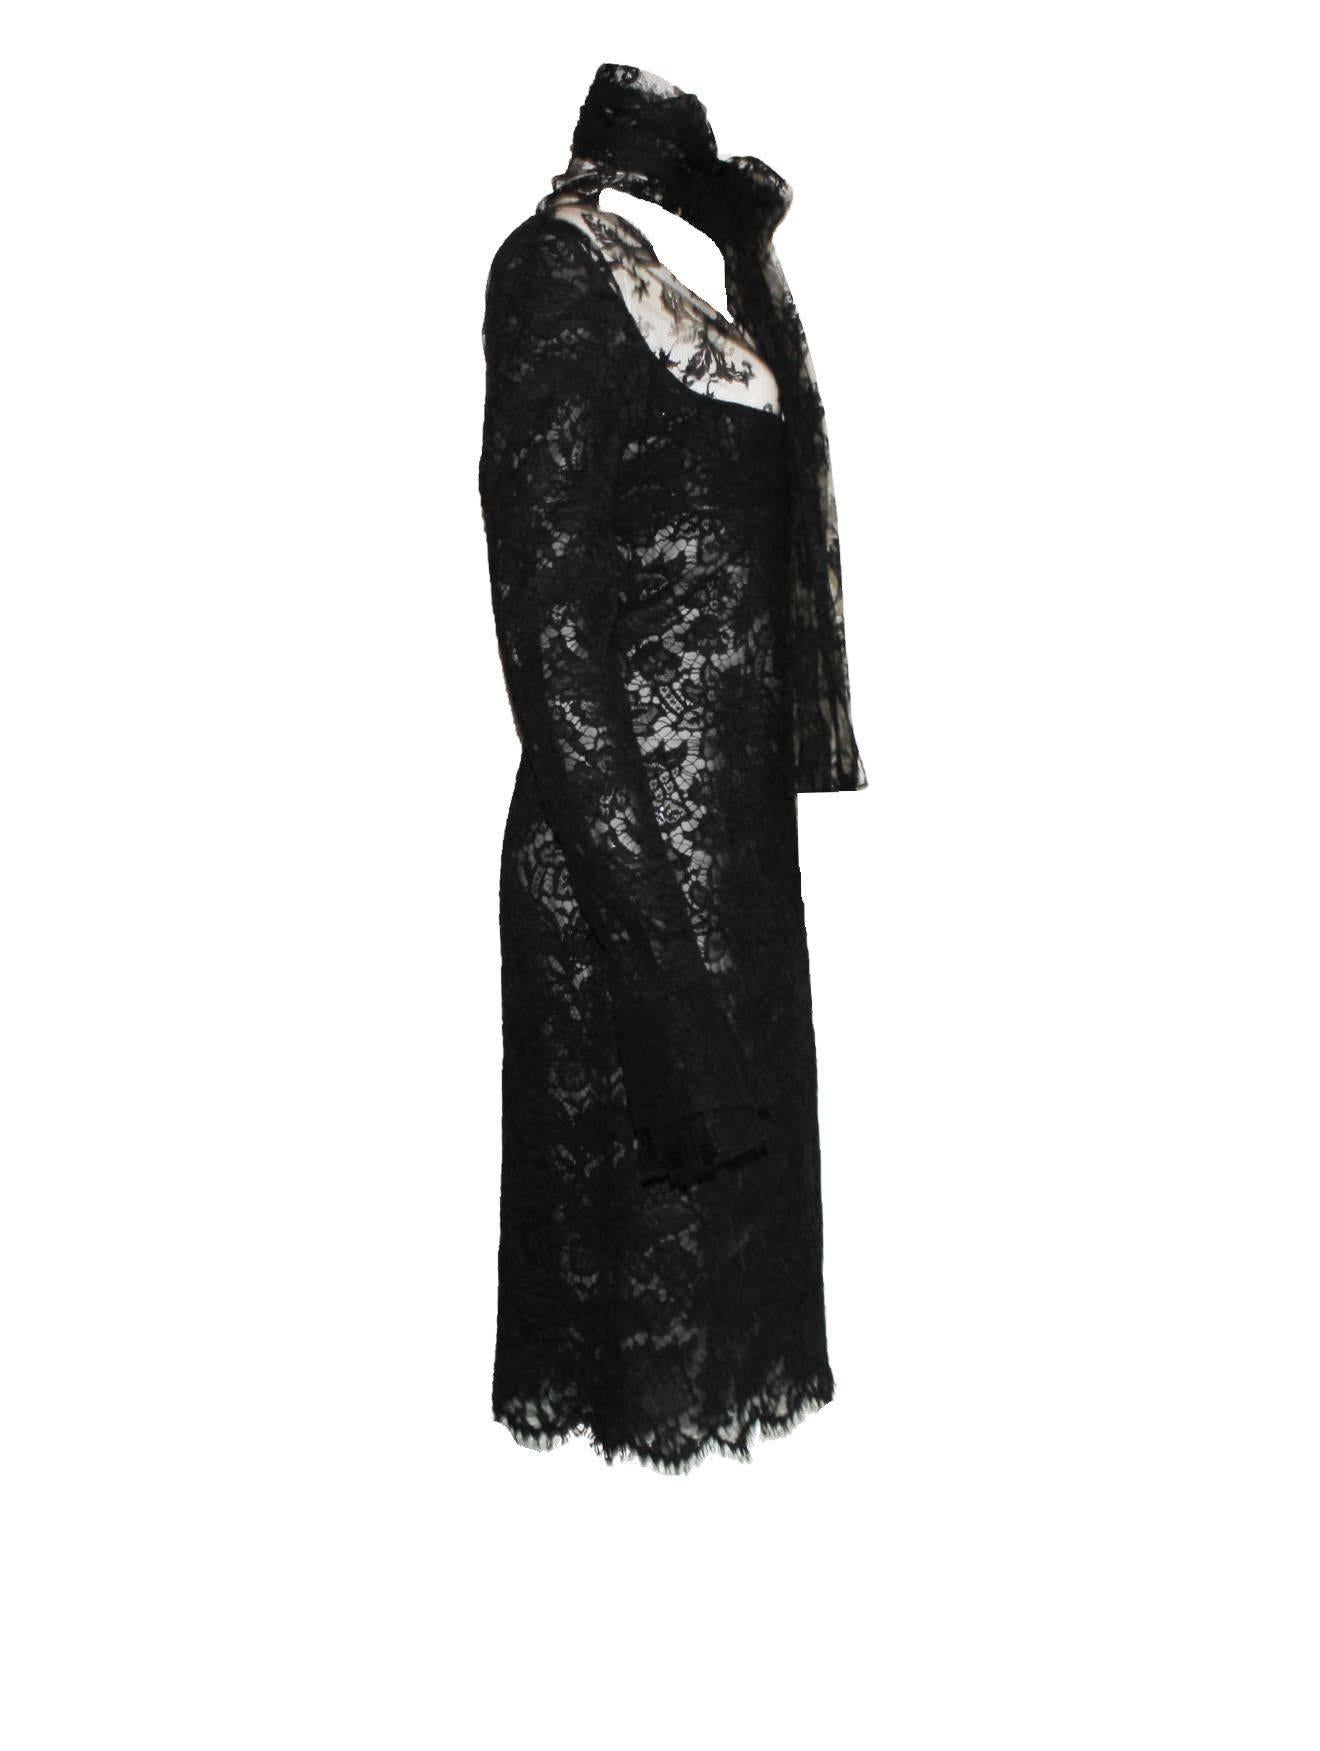 Robe en dentelle créée par Tom Ford pour Yves Saint Laurent 
Collection FW 2002
Pièce rare
Dentelle guipure noire de qualité supérieure 
Doublé à l'arrière d'un tulle en maille noir
Vu sur la campagne AD, sur le podium et sur Carine Roitfeld
L'une